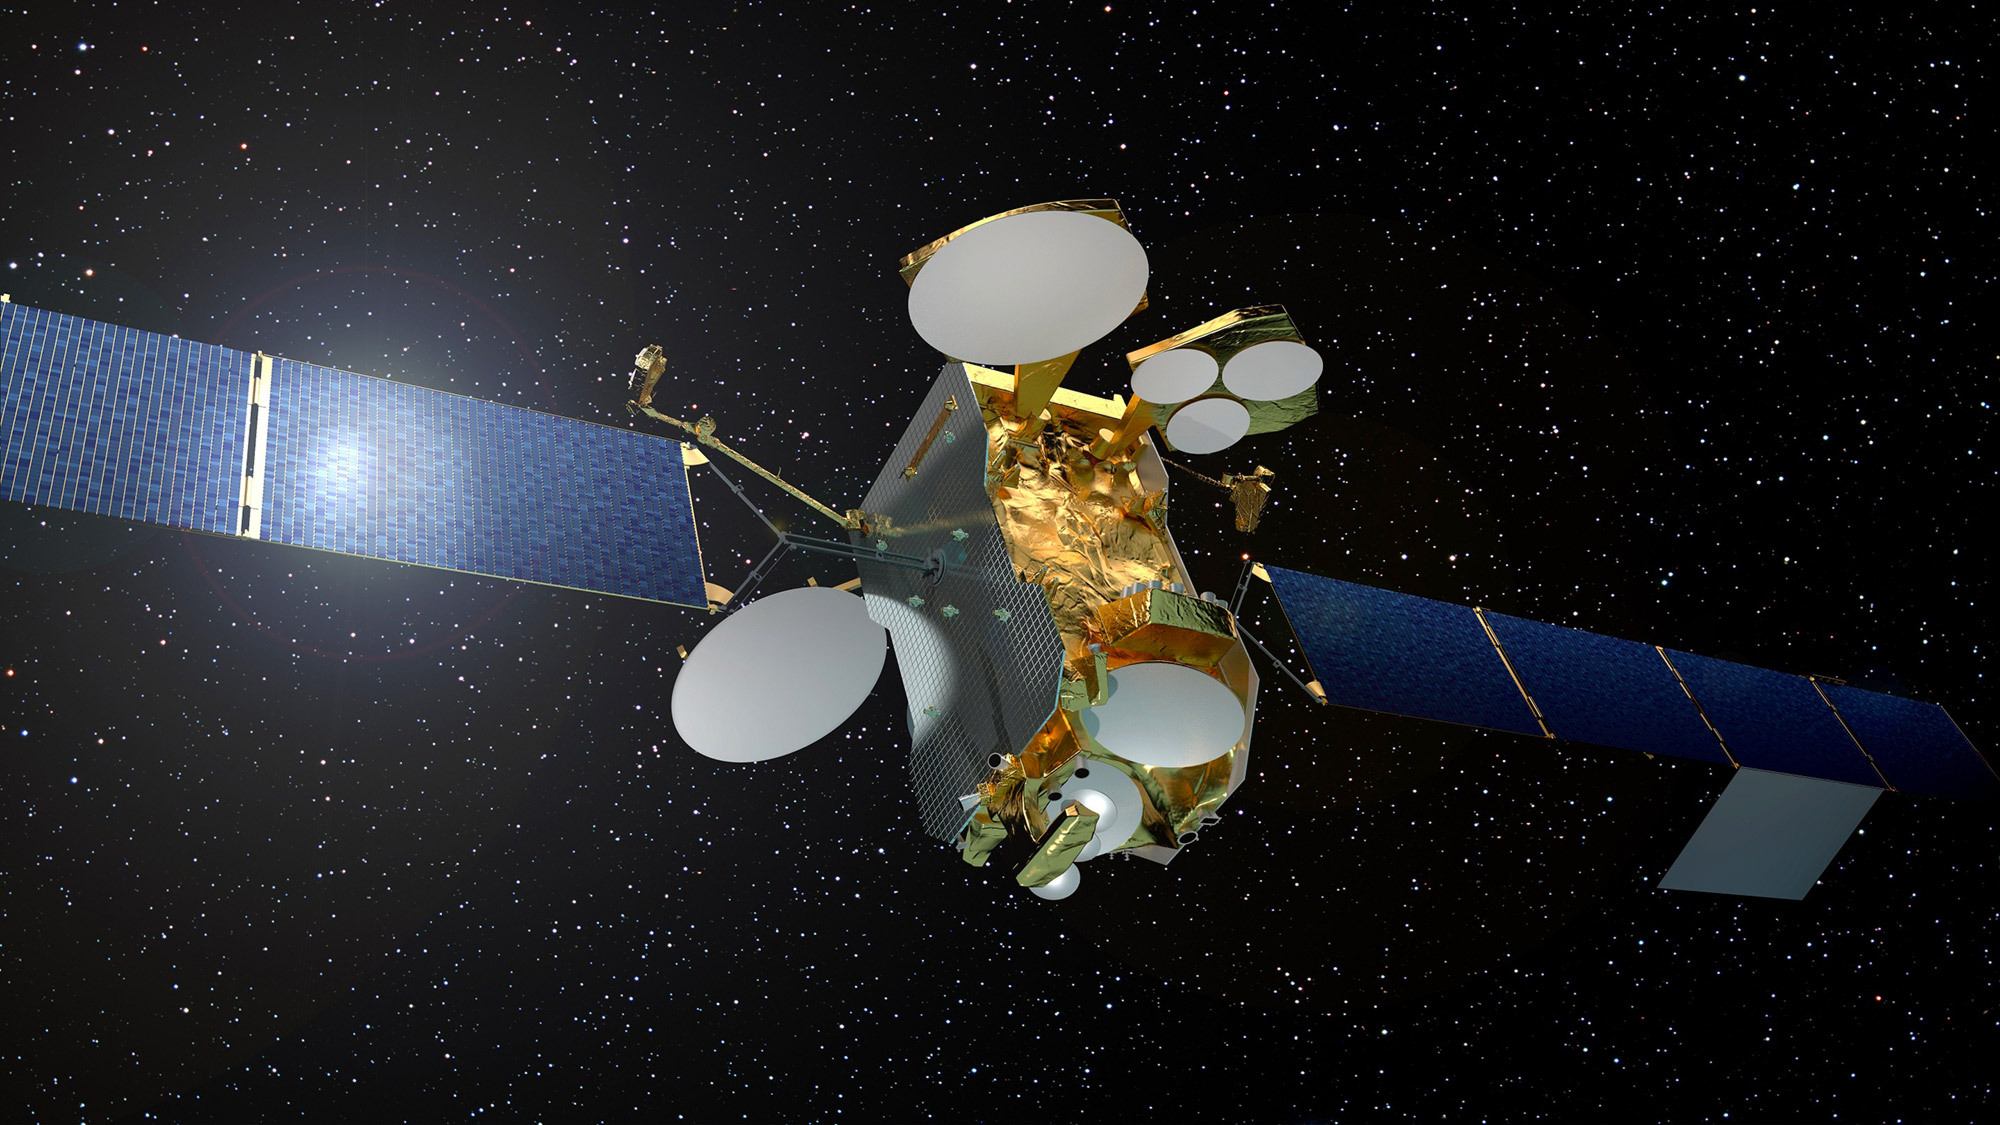 Construit autour de la plateforme Eurostar E3000e, à propulsion entièrement électrique, d'Airbus, le satellite Eutelsat 172B est conçu pour une durée de vie d'au moins 15 ans. Il est le premier satellite à amener l'Internet haut débit à bord des avions. © Airbus Defence and Space